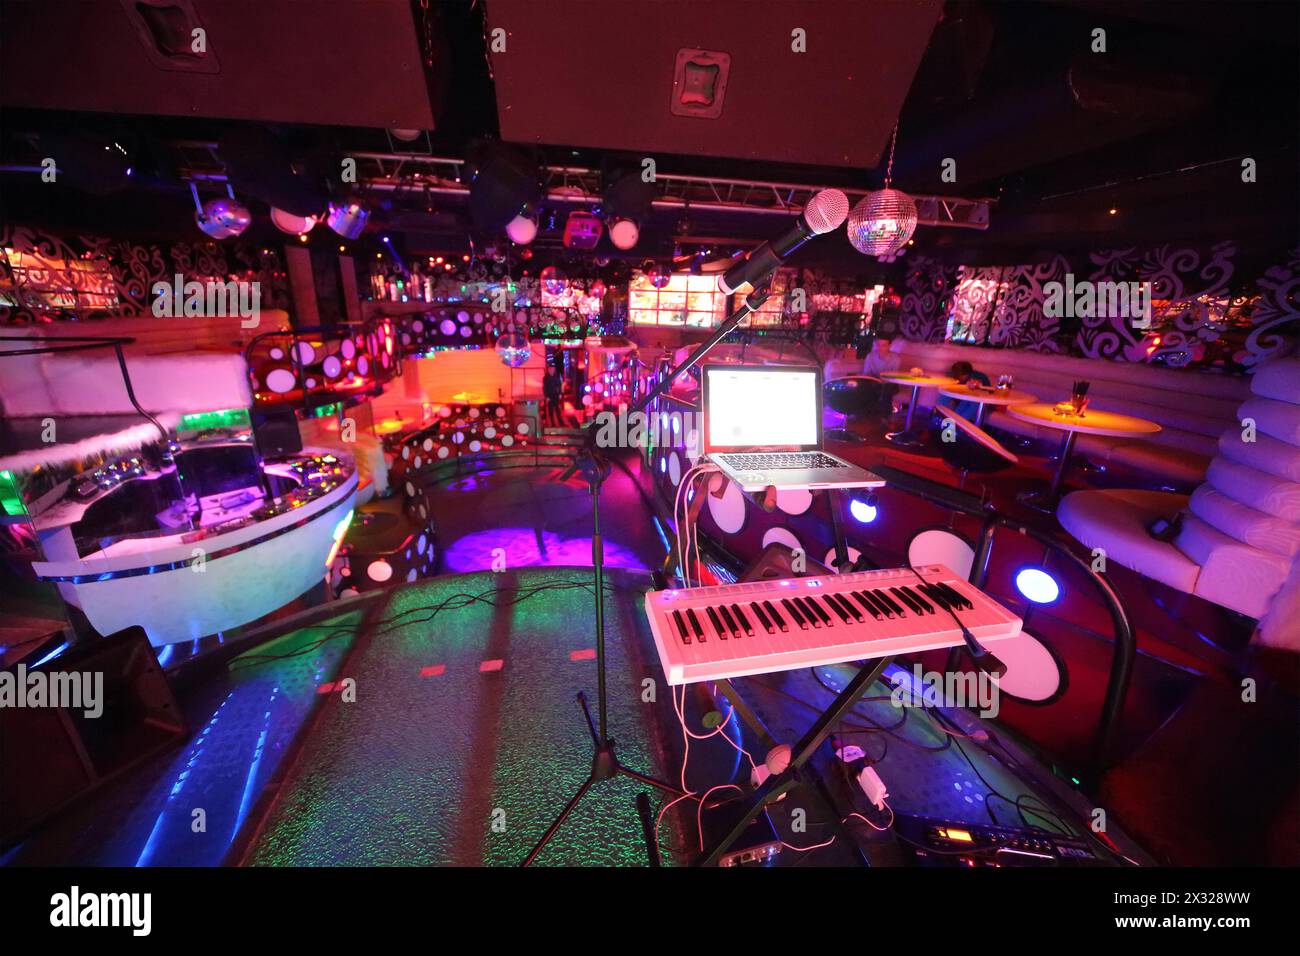 MOSKAU - 18. JAN: Das Innere eines der Räume des Nachtclubs Pacha mit Platz für Sänger am 18. Januar 2013 in Moskau, Russland. Stockfoto